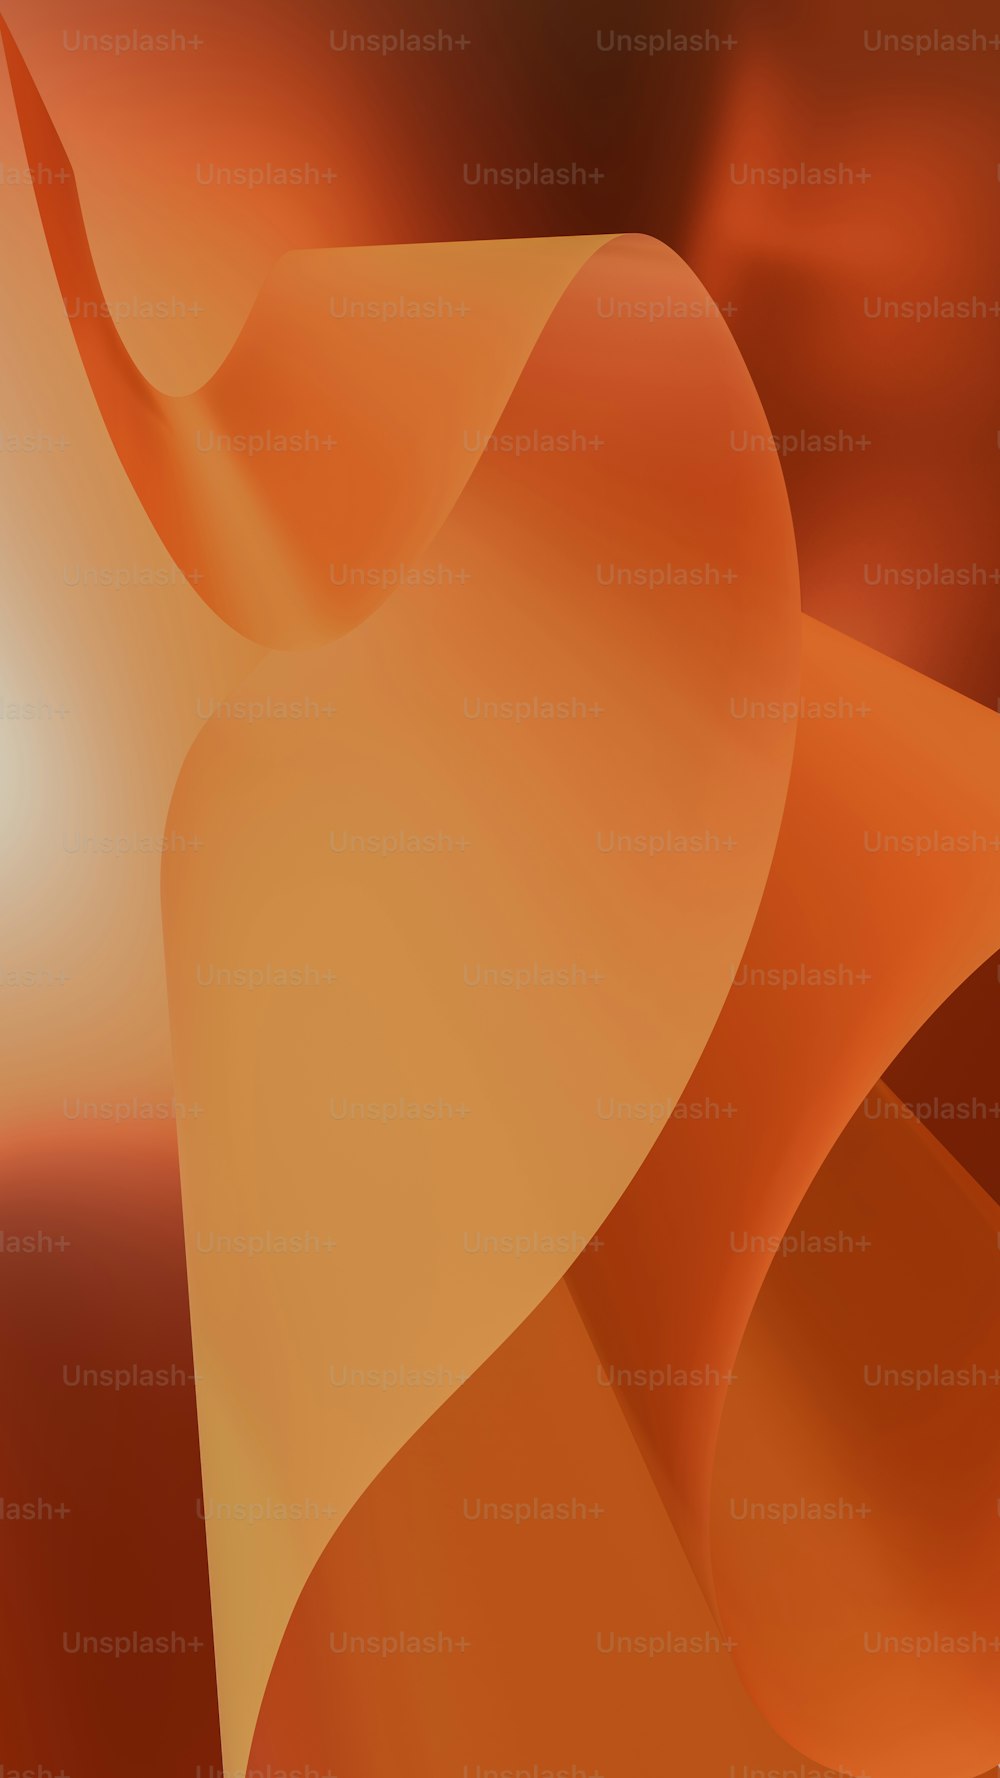 Una imagen generada por computadora de un fondo naranja y marrón